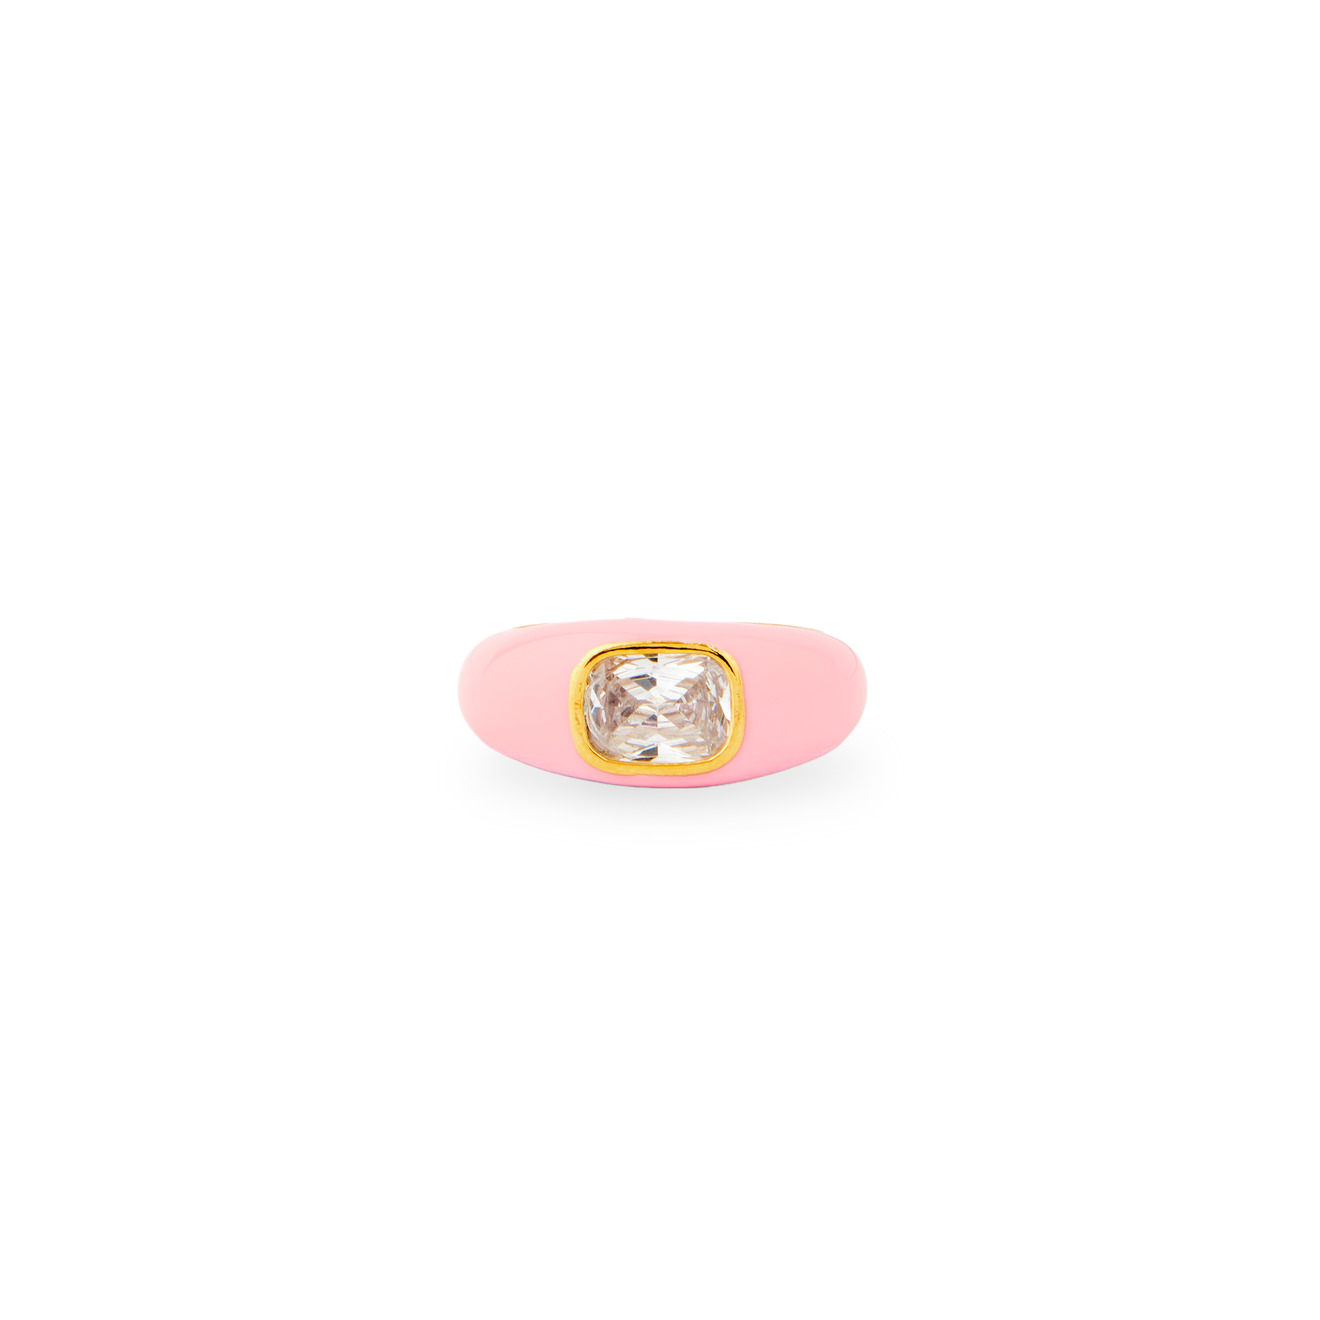 Herald Percy Кольцо с розовой эмалью и кристаллом herald percy золотистое широкое кольцо с кристаллом